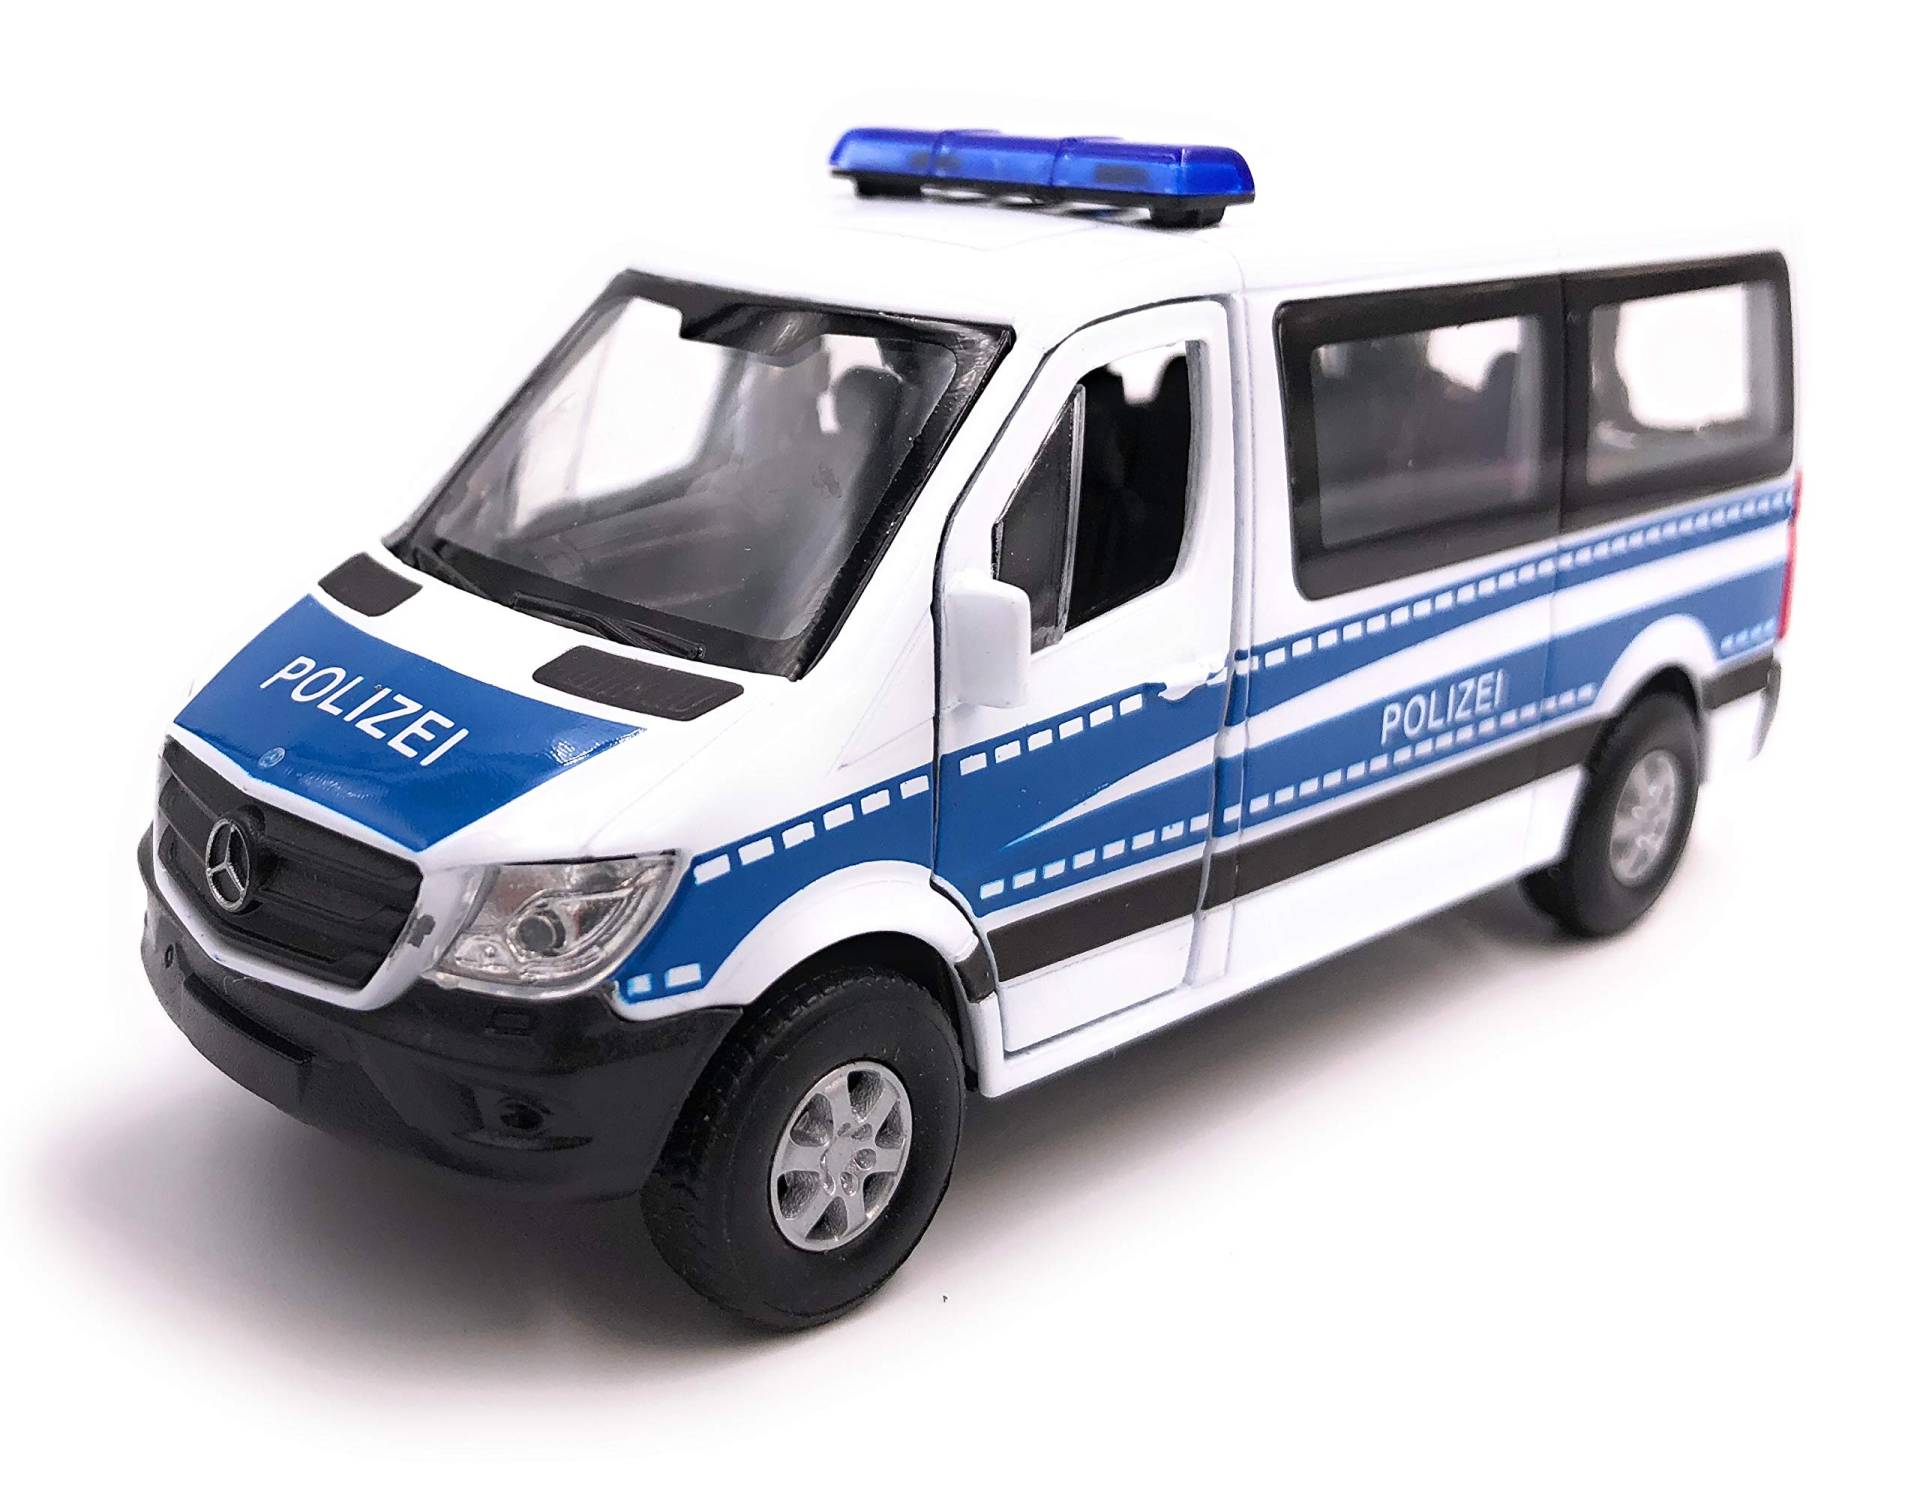 H-Customs Welly Mercedes Benz Sprinter Polizei Modellauto Auto Lizenzprodukt 1:34-1:39 von H-Customs